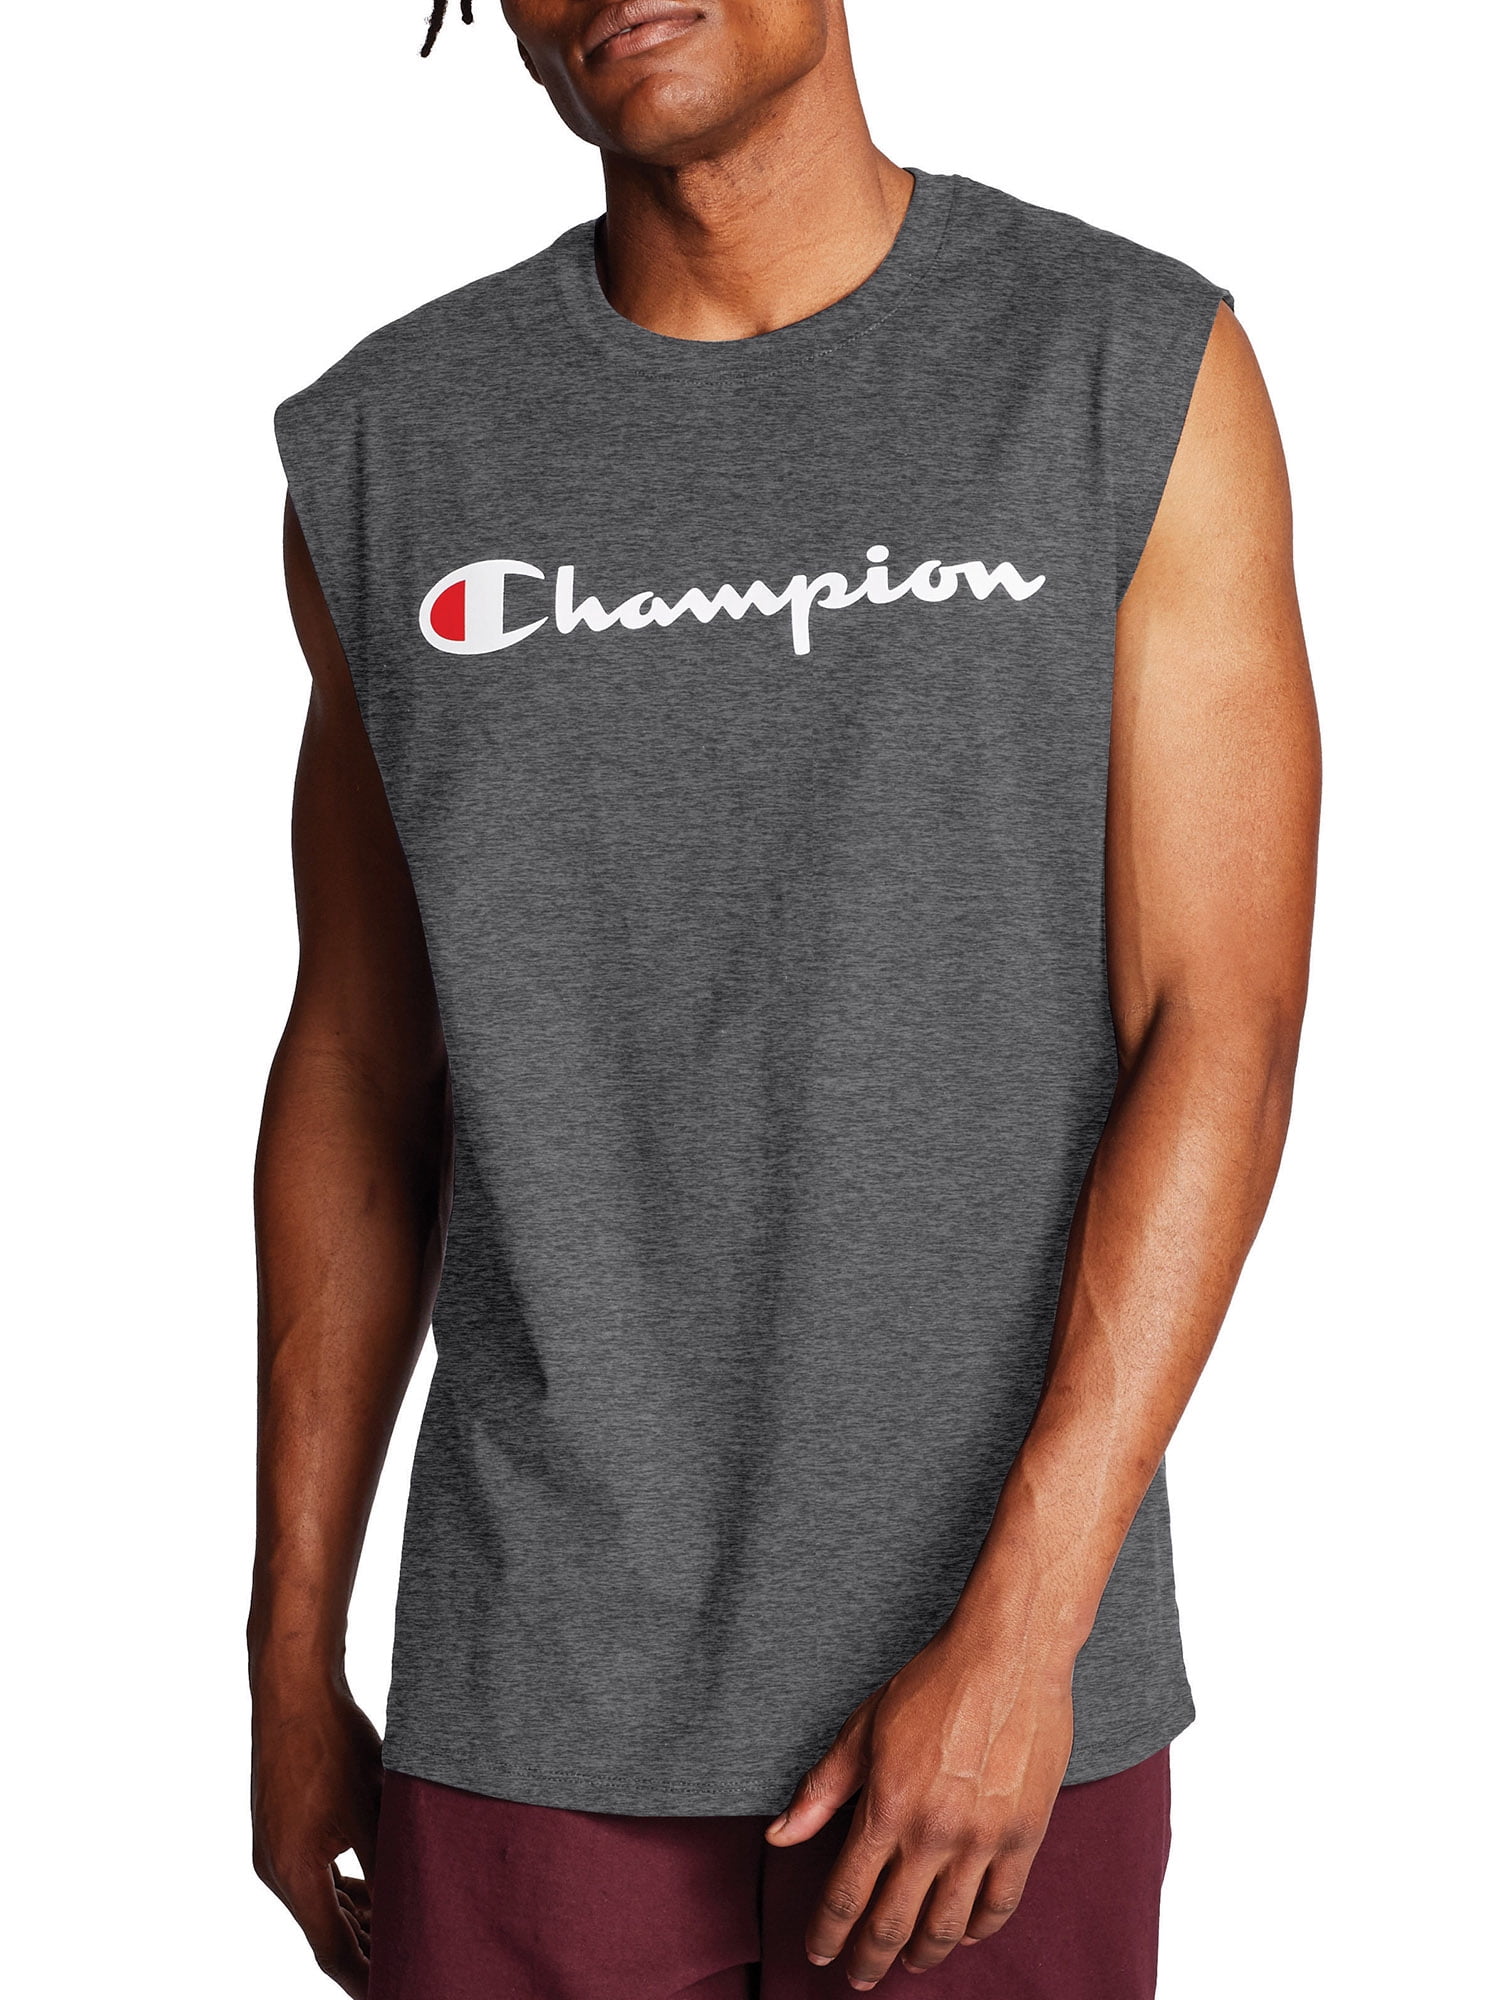 champion t shirt sleeveless jersey